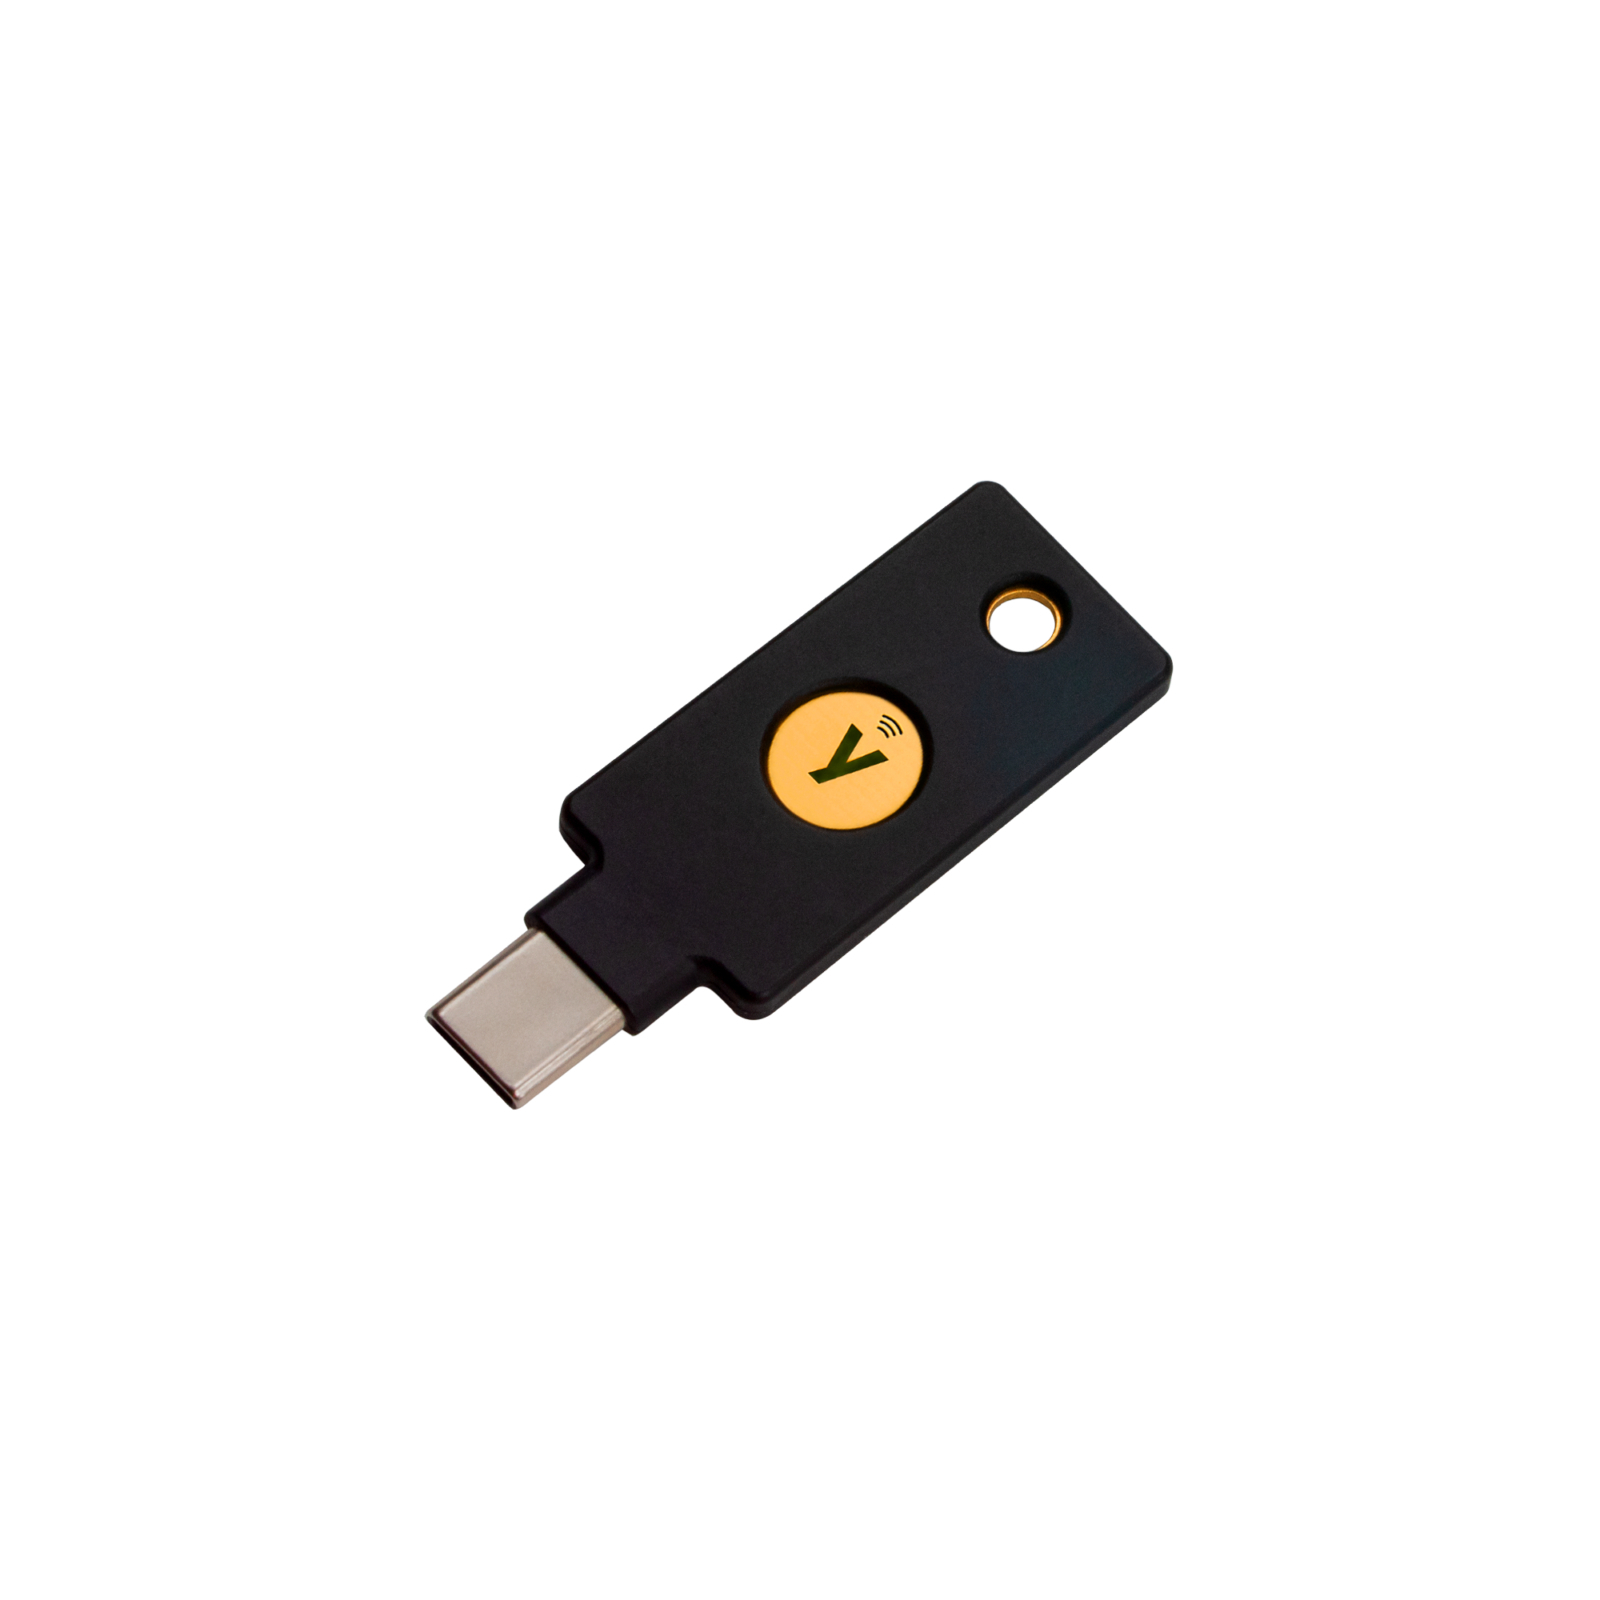 Апаратний ключ безпеки Yubico YubiKey 5C NFC FIPS (YubiKey_5C_NFC_FIPS)